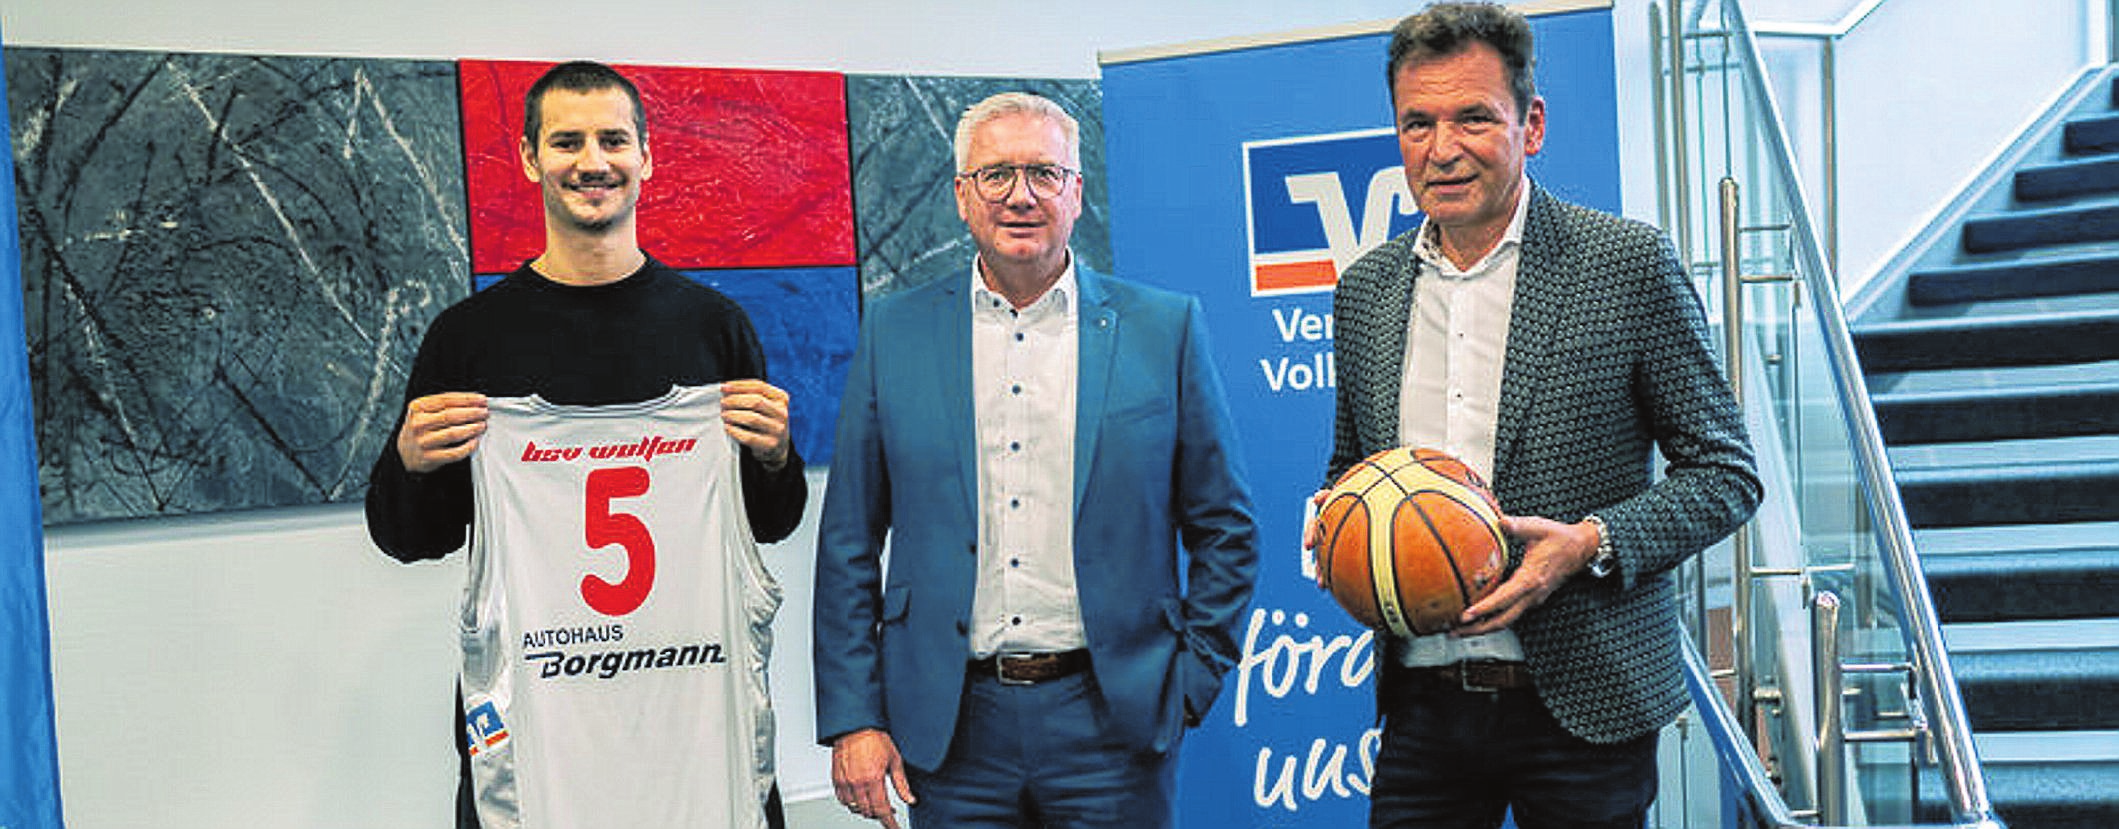 In den Räumen des langjährigen BSV-Partners Vereinte Volksbank eG wurde Rückkehrer Alexander Winck vorgestellt. Das 23-jährige BSV-Eigengewächs spielte in der vergangenen Saison in der 2. Bundesliga ProB in Herford. Die Volksbank-Vorstände Ingo Hinzmann und Norbert Becker begrüßten Alex Winck.